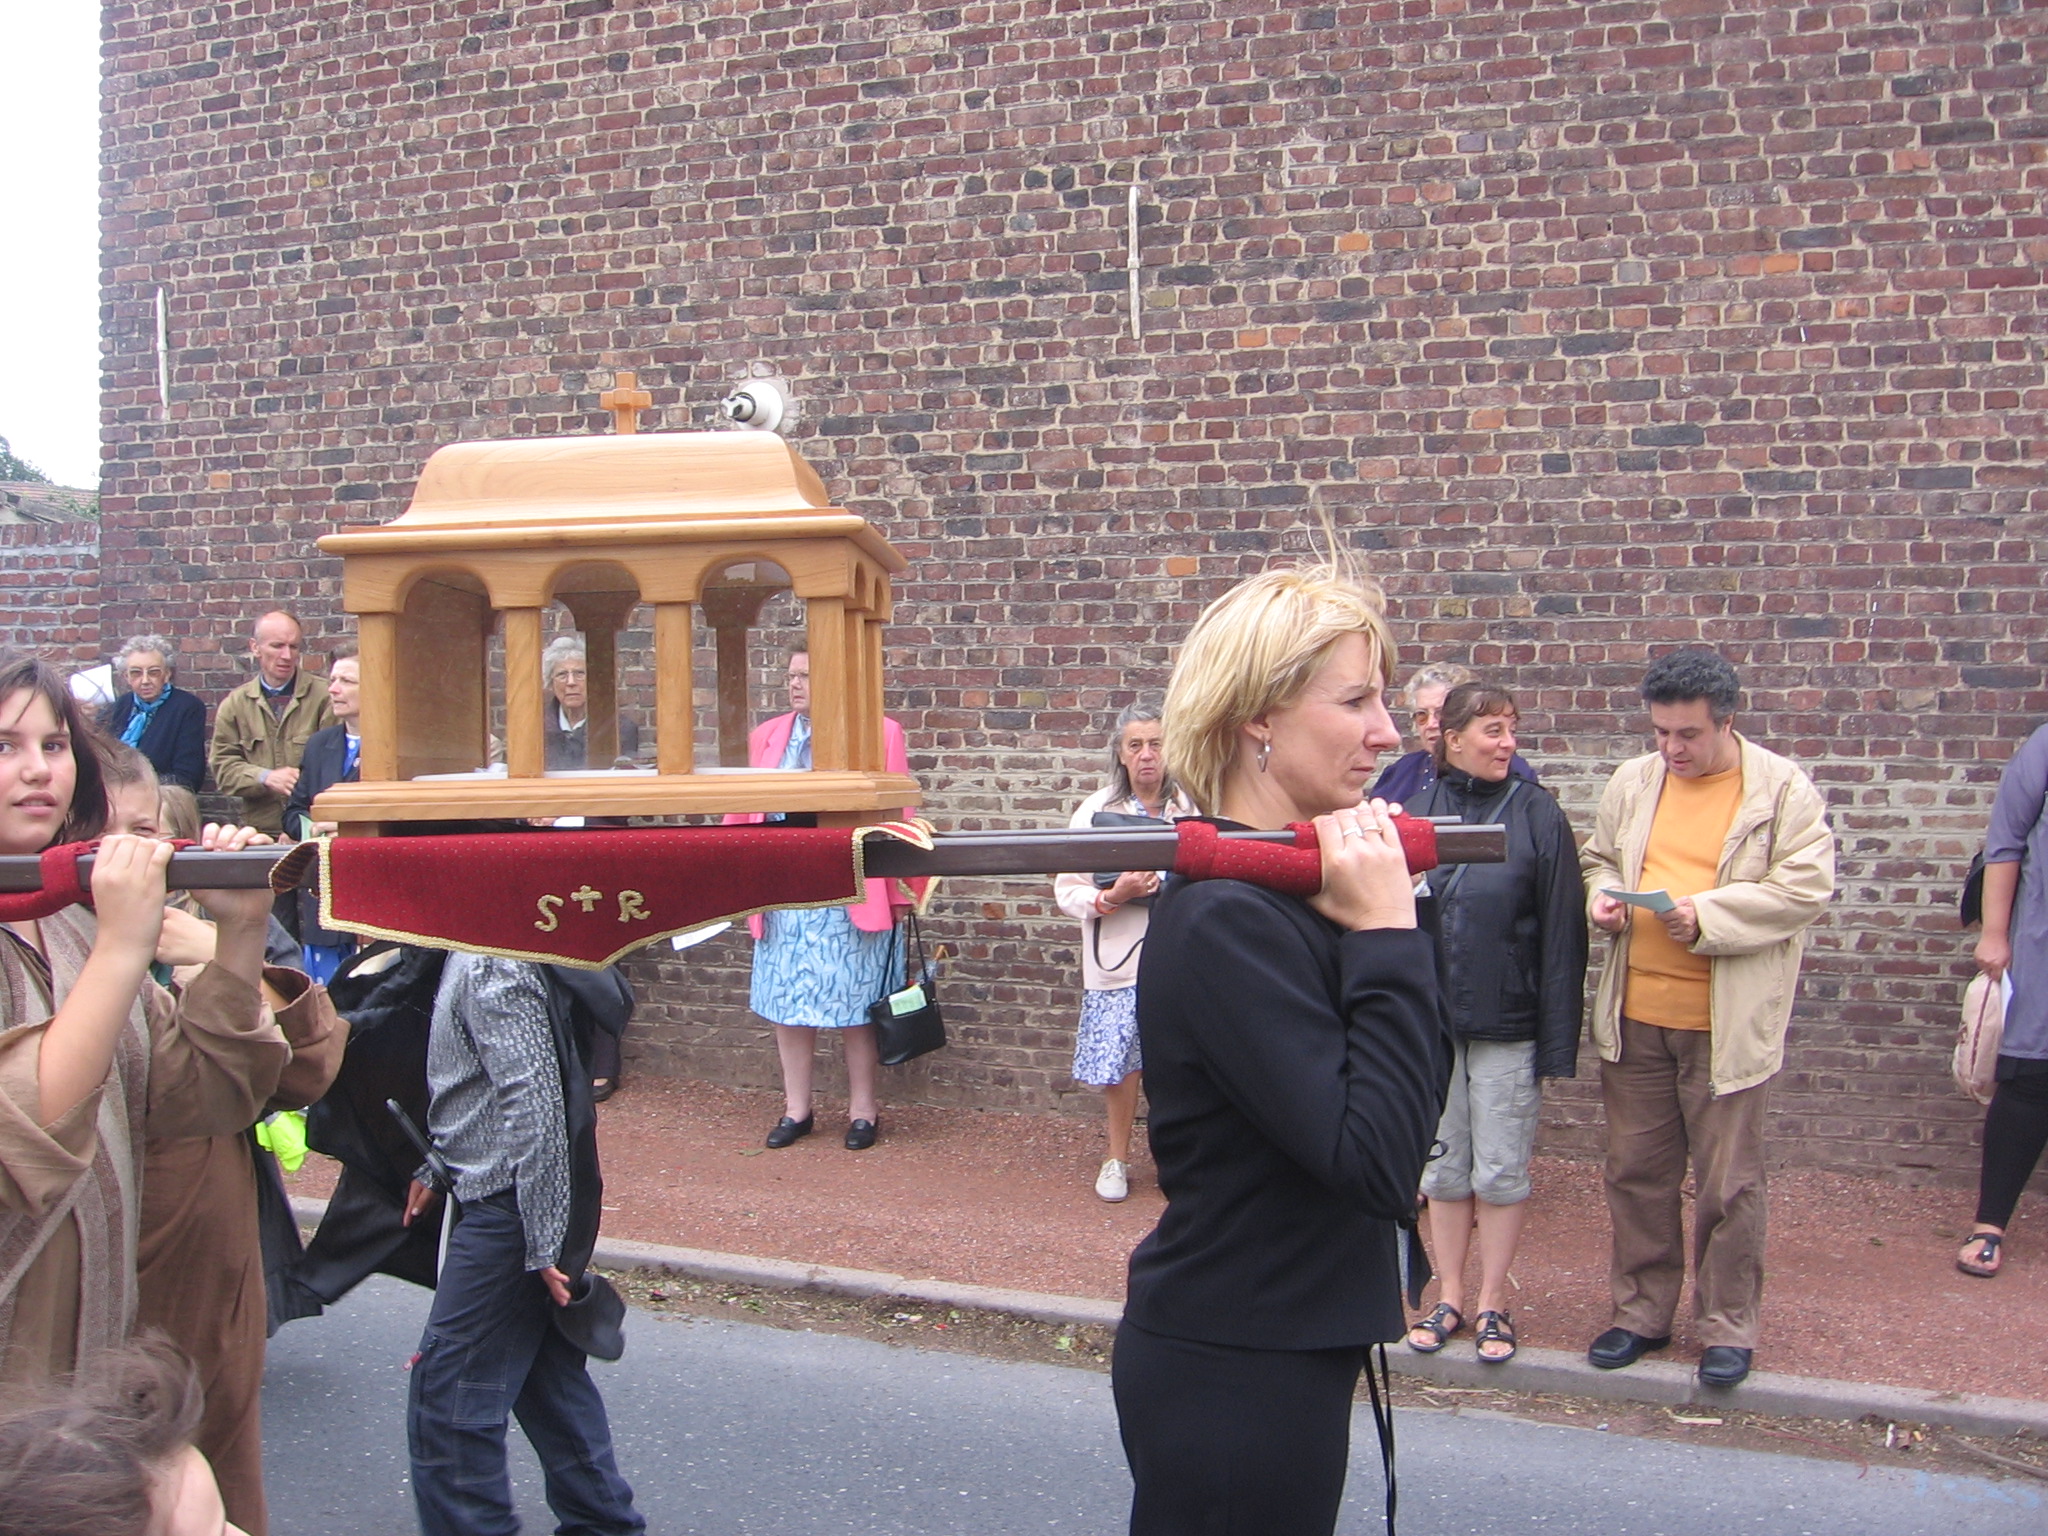 La procession, avec les reliques de St Roch,  se dirige vers la chapelle St Roch d'Hergnies